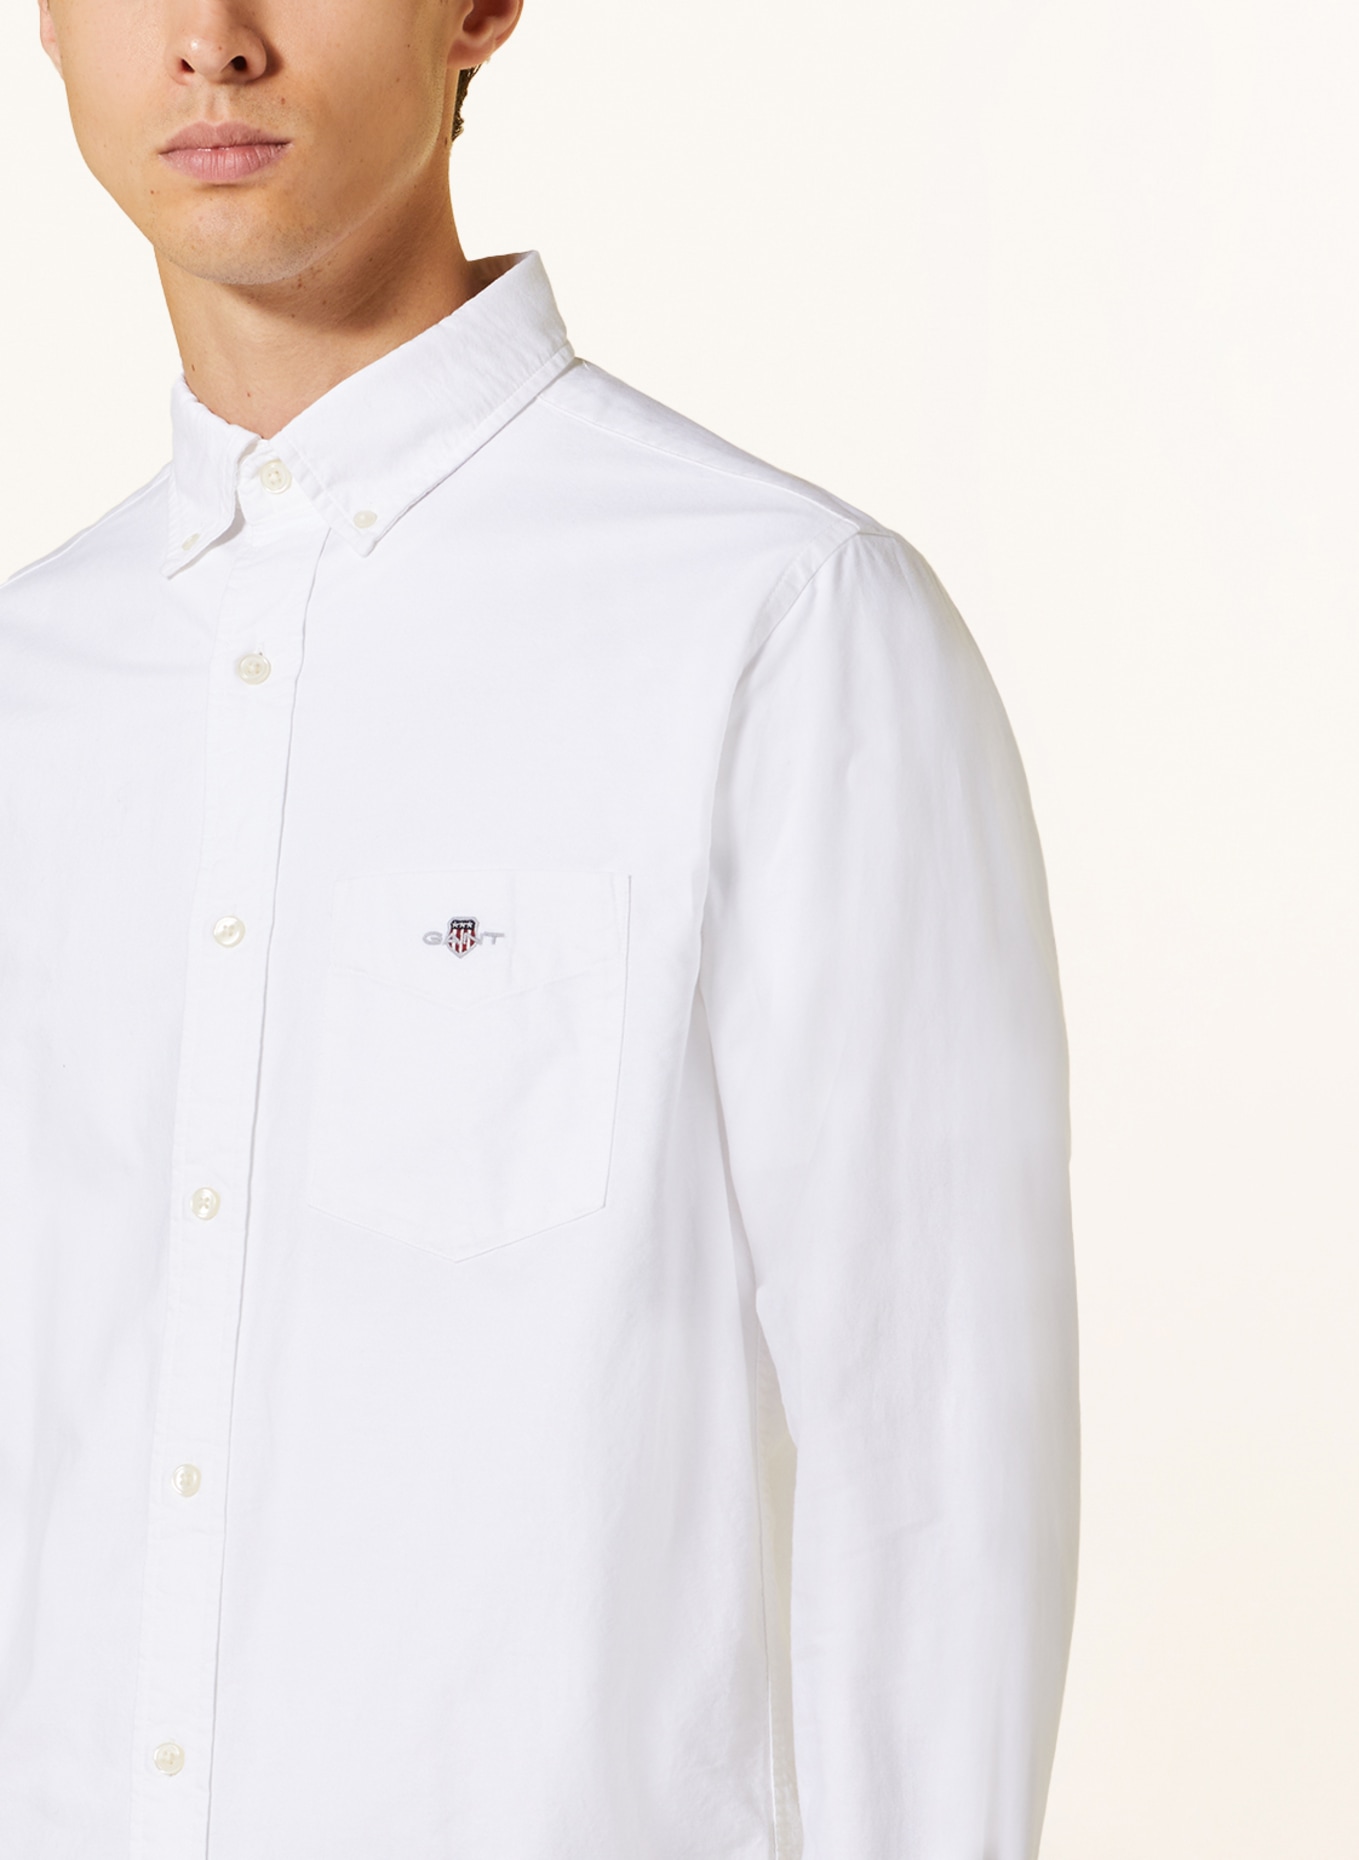 GANT Oxford shirt regular fit, Color: WHITE (Image 4)